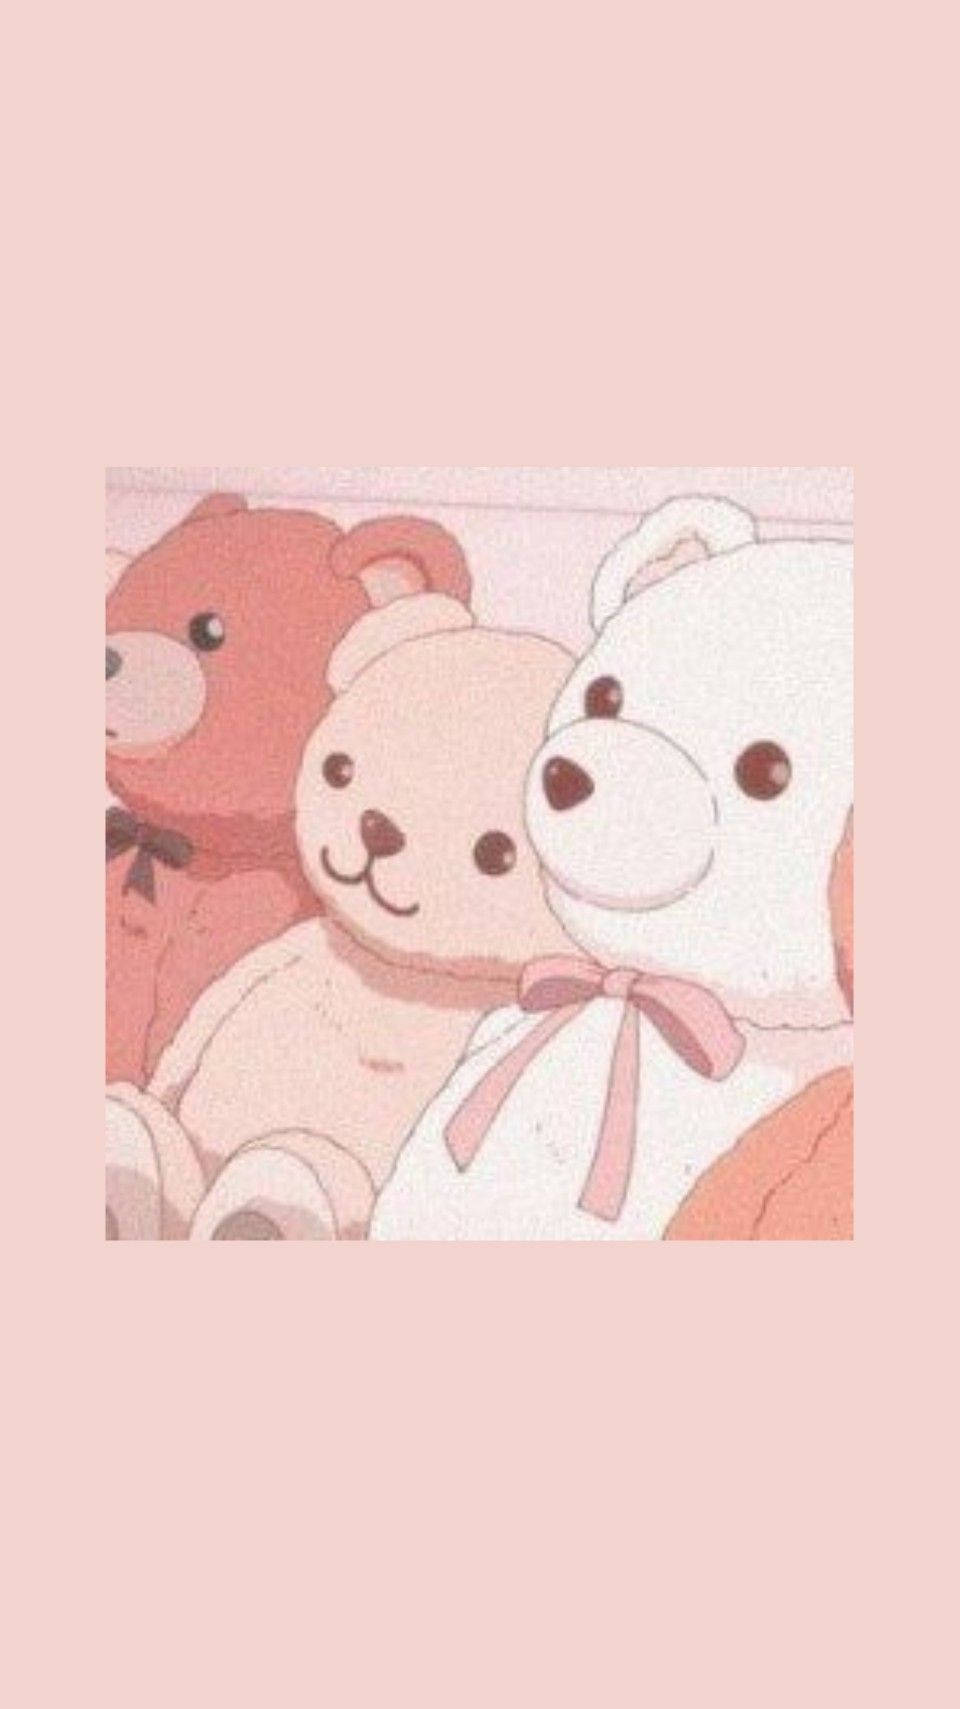 Cute Bear Wallpaper 4K Cute costume Smiley bear 10099